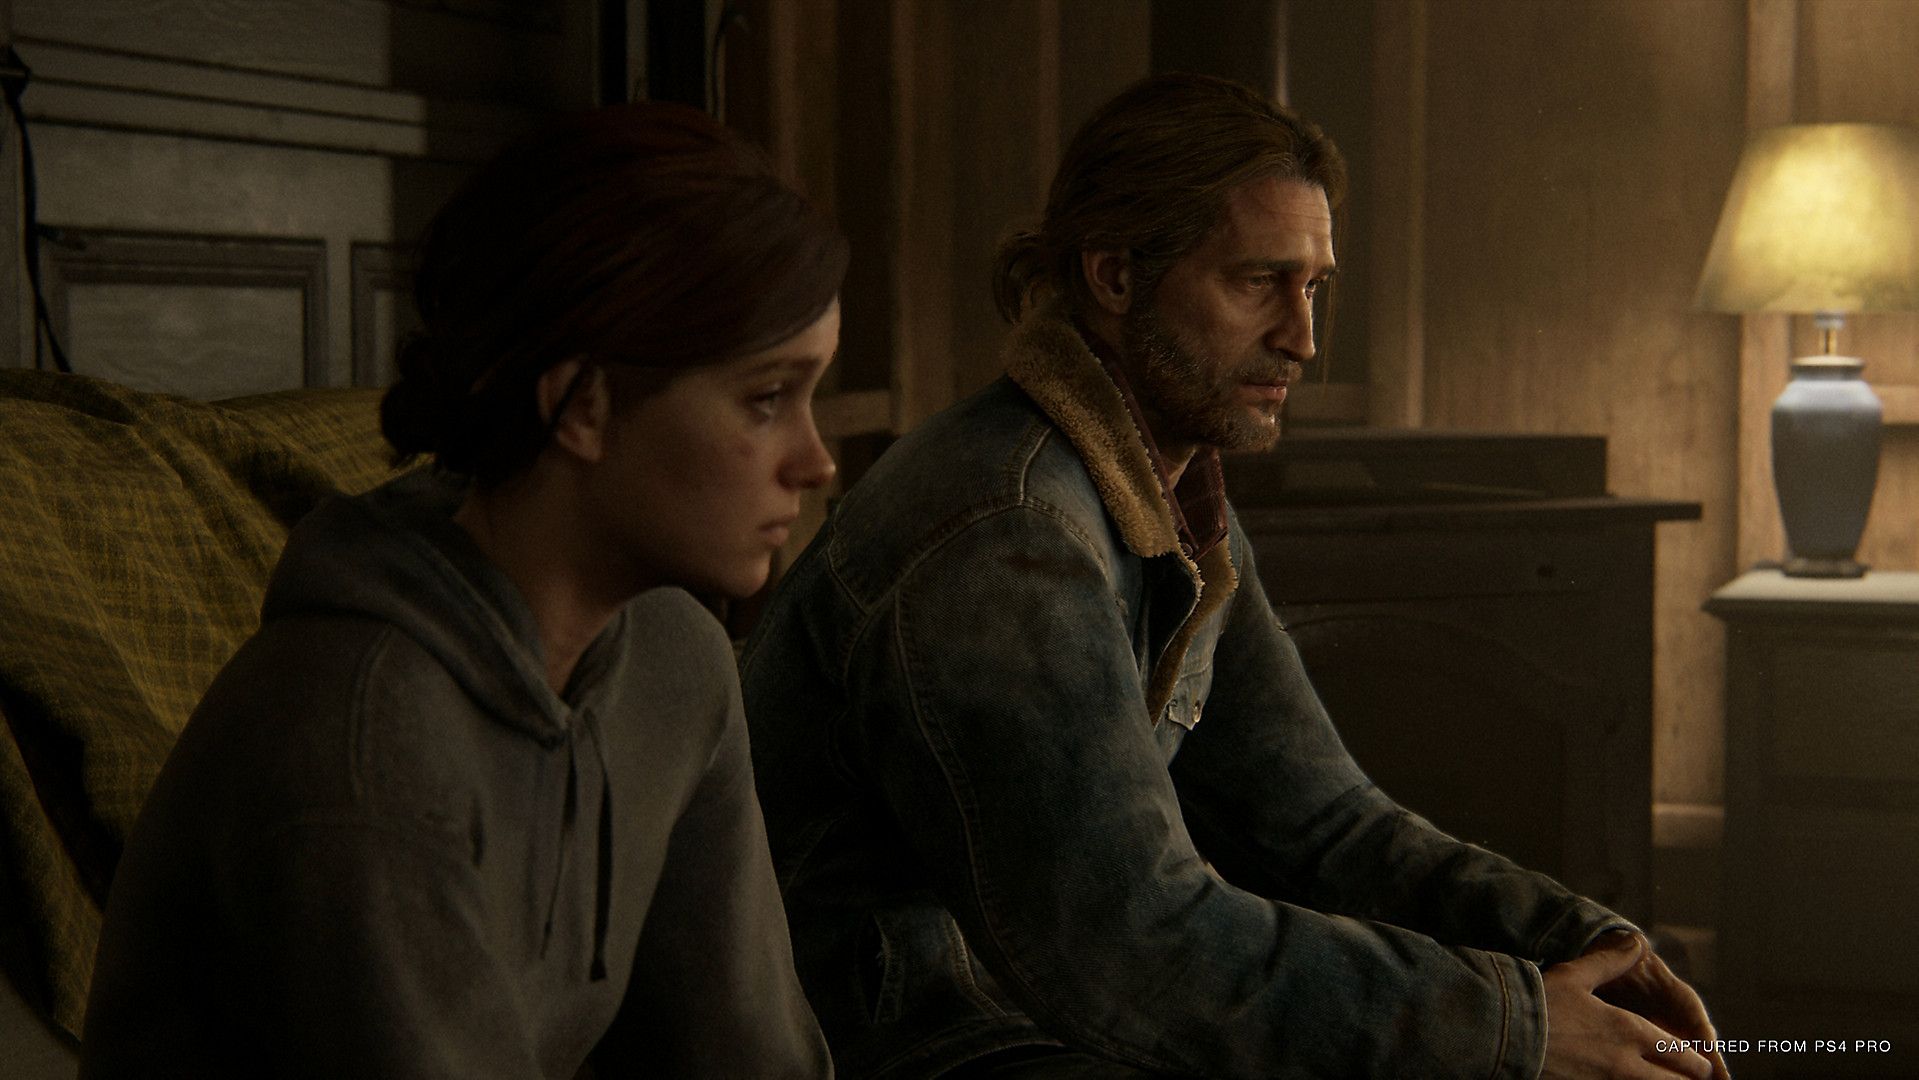 THE LAST OF US Ellie Meets Video Game Joel